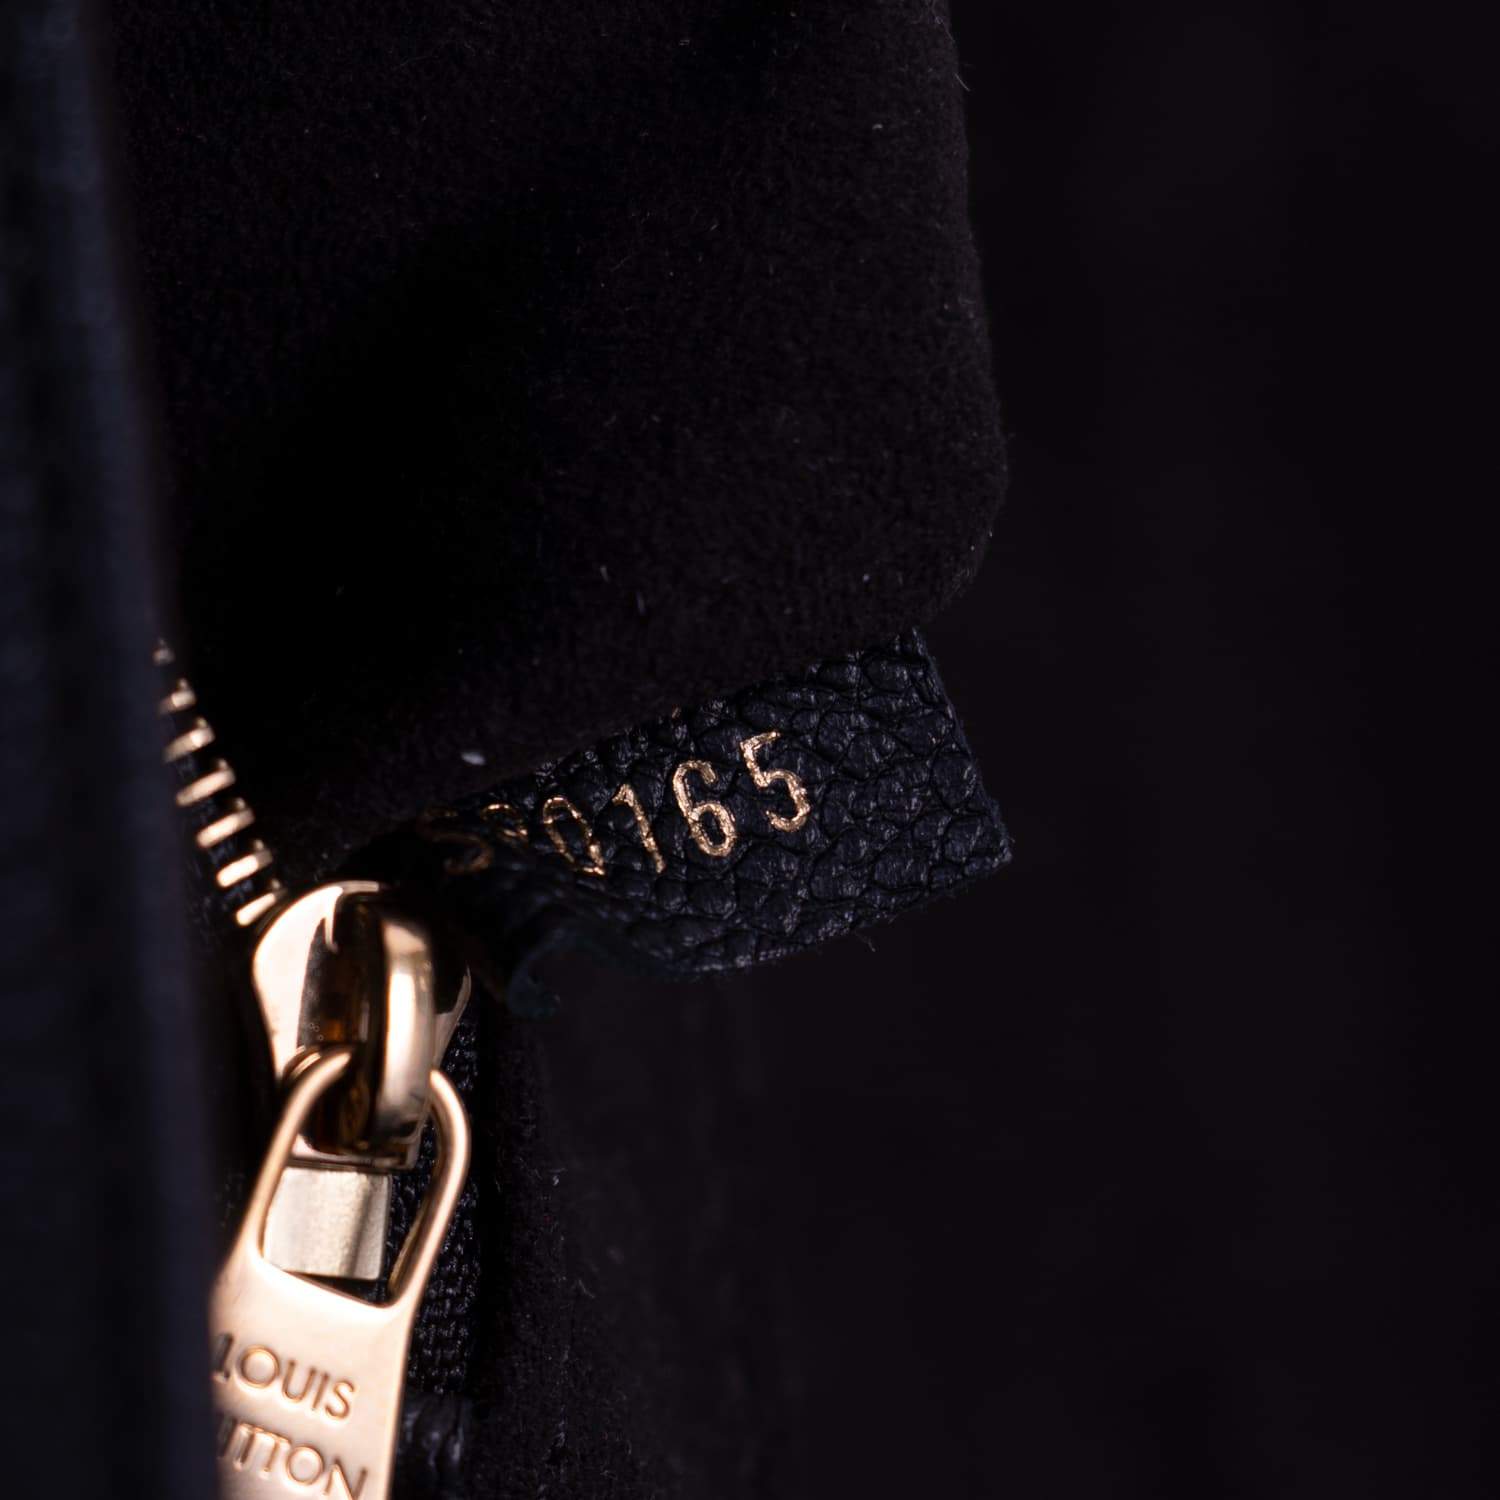 Authentic Louis Vuitton Monogram Empreinte Leather St Germain PM shoulder  bag